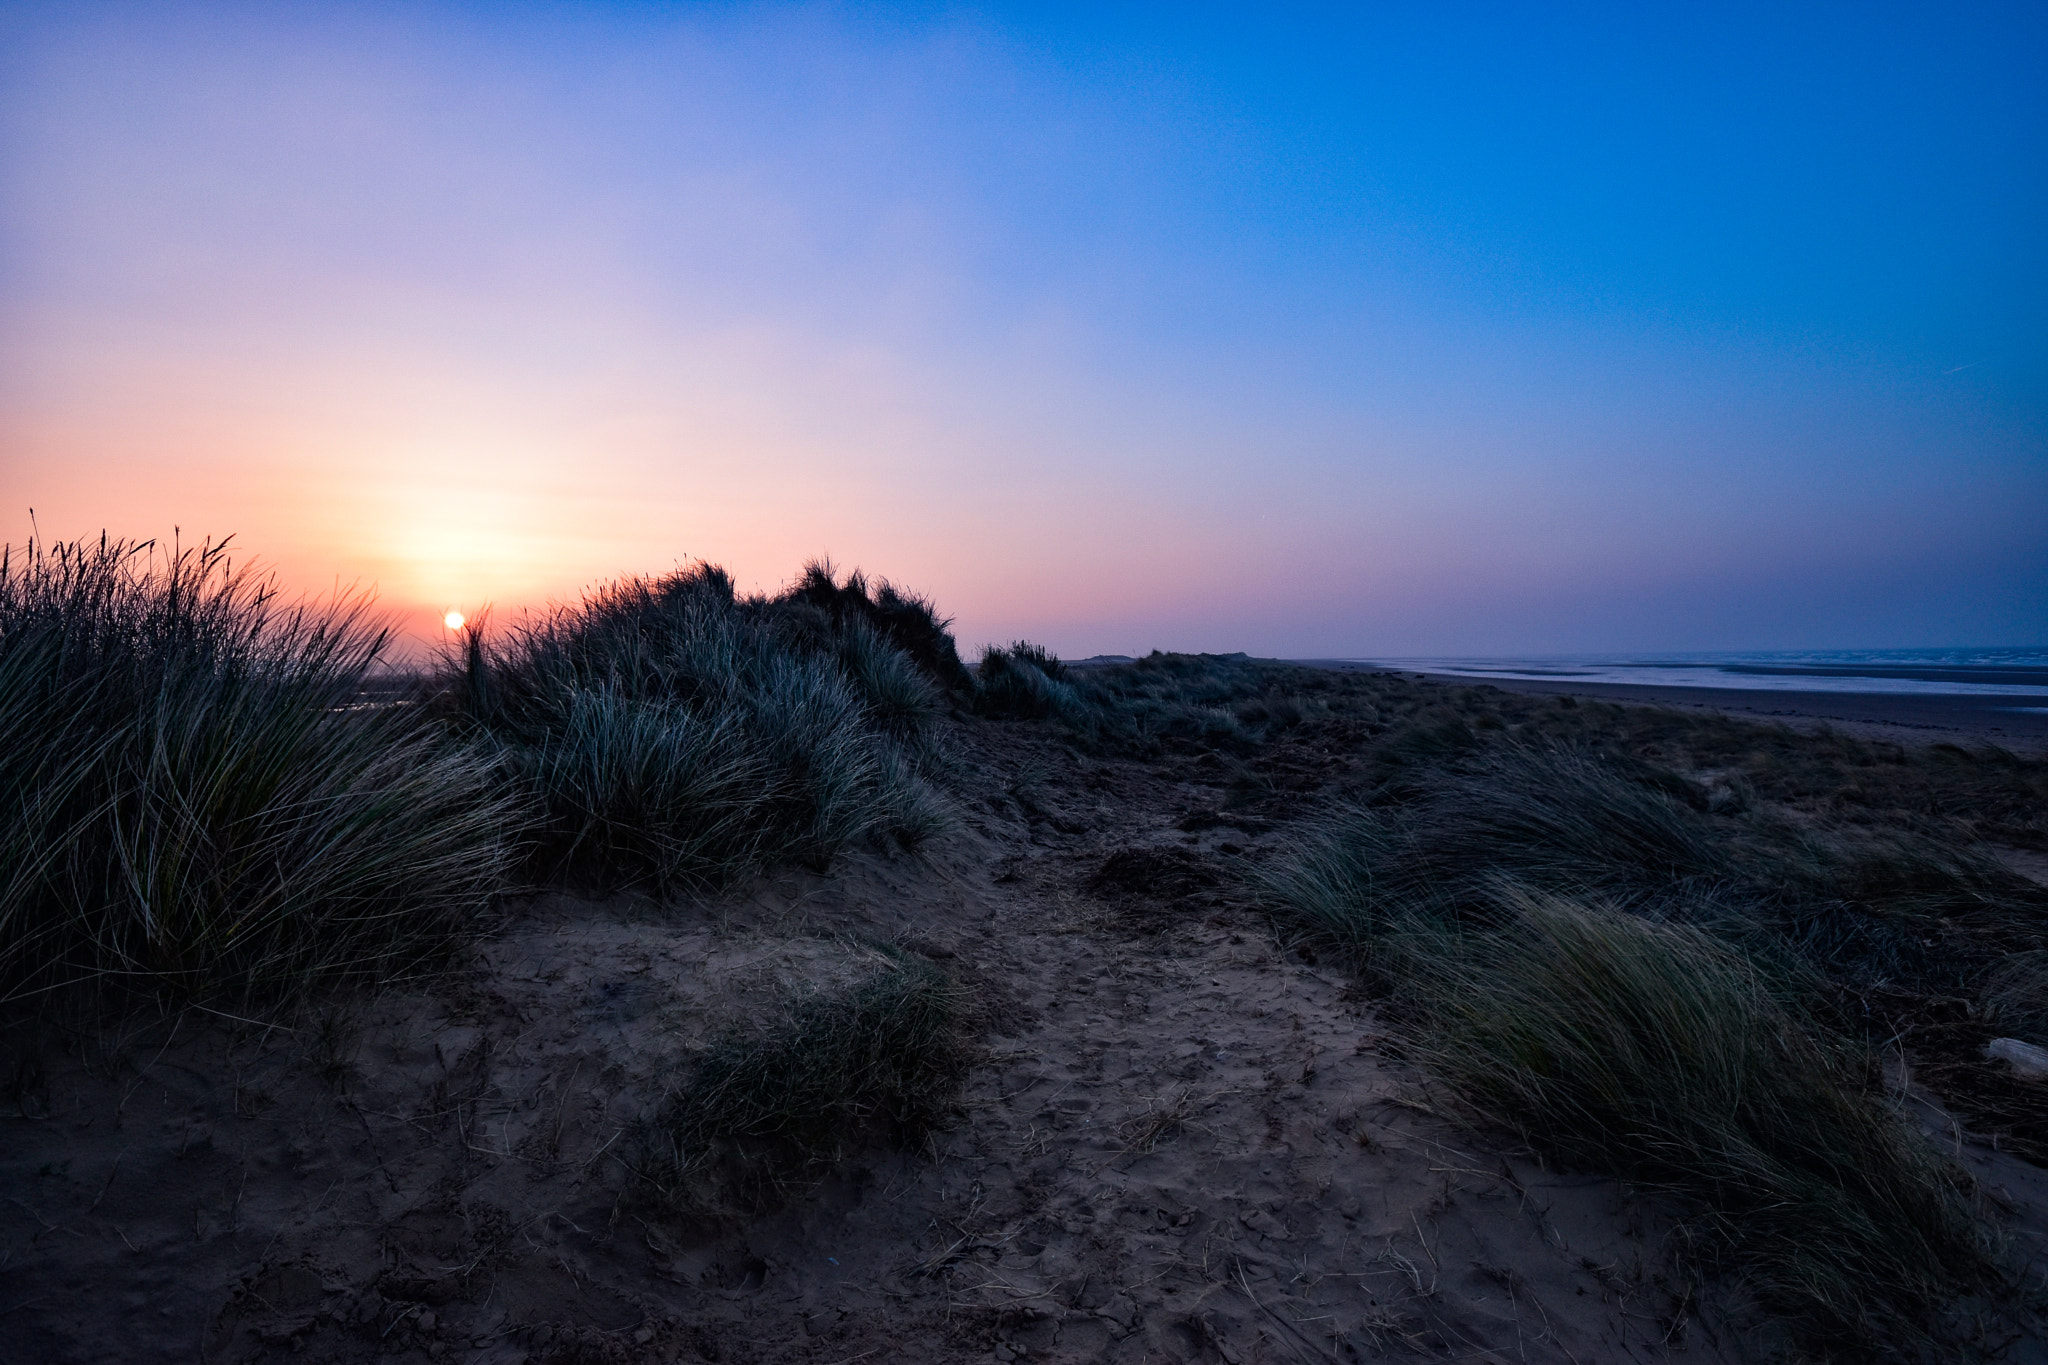 Nikon D5500 sample photo. Sand dune at sunset photography